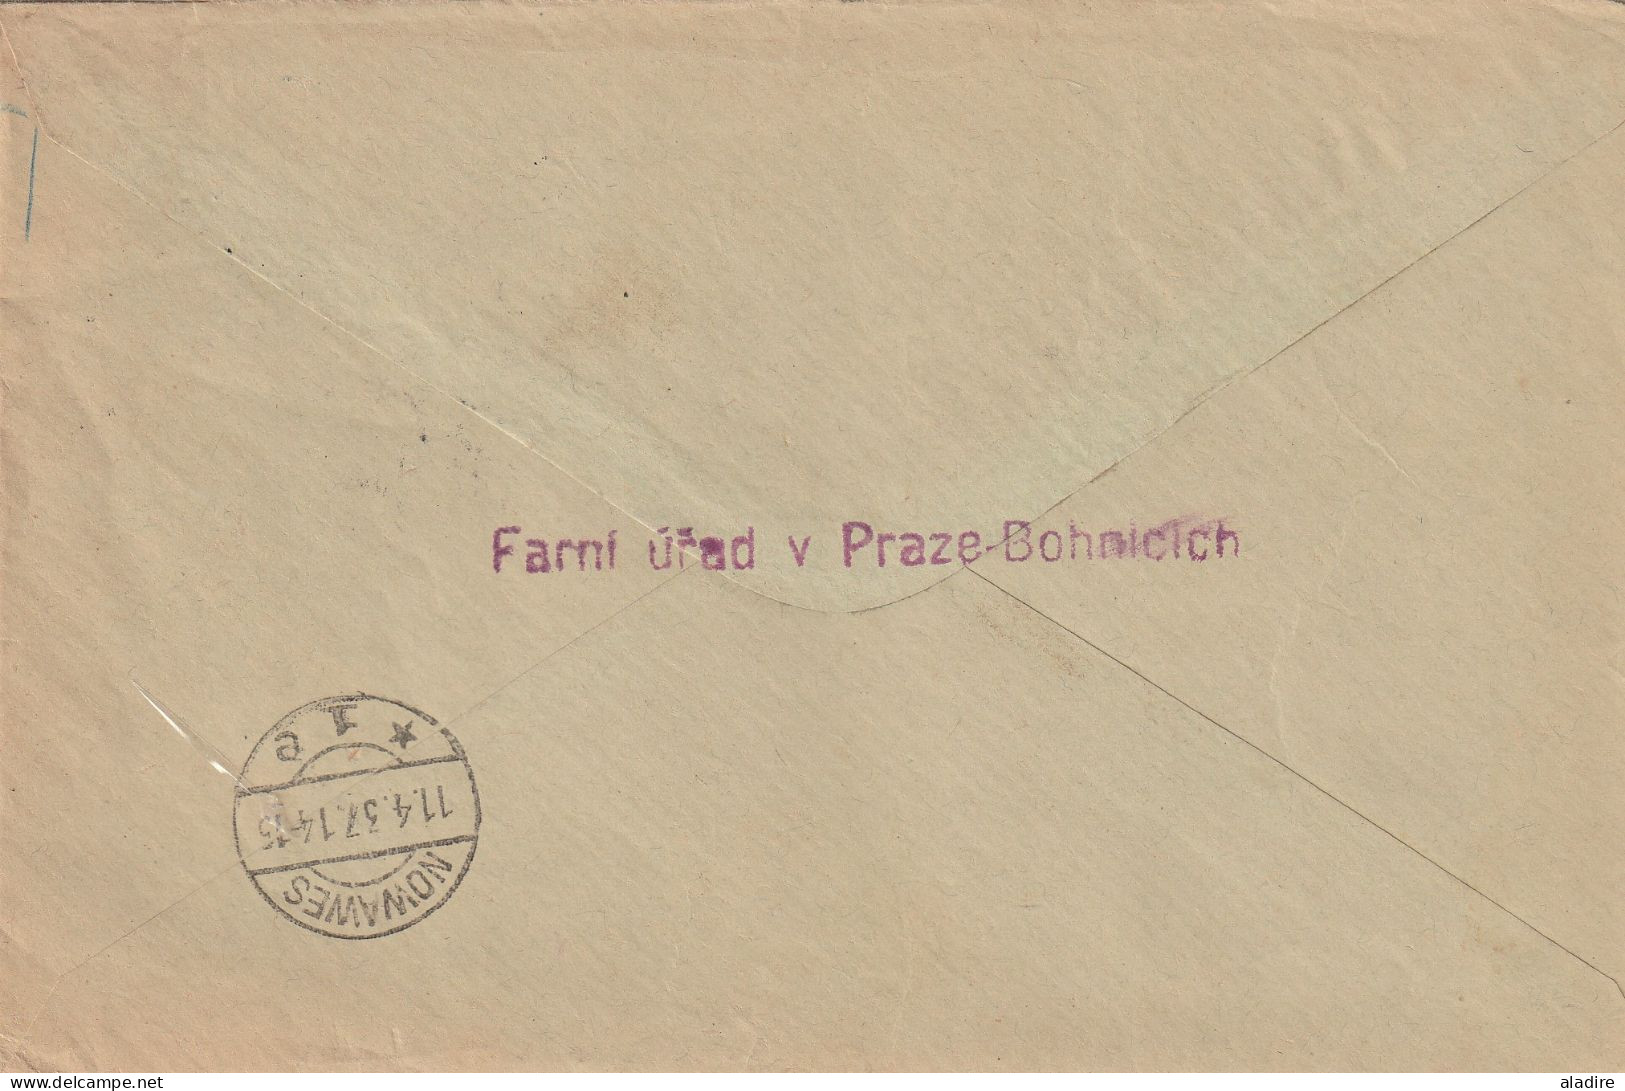 1930's & 40's - CESKOSLOVENSKO - Tchécoslovaquie - Czechoslovakia - 18 postal documents